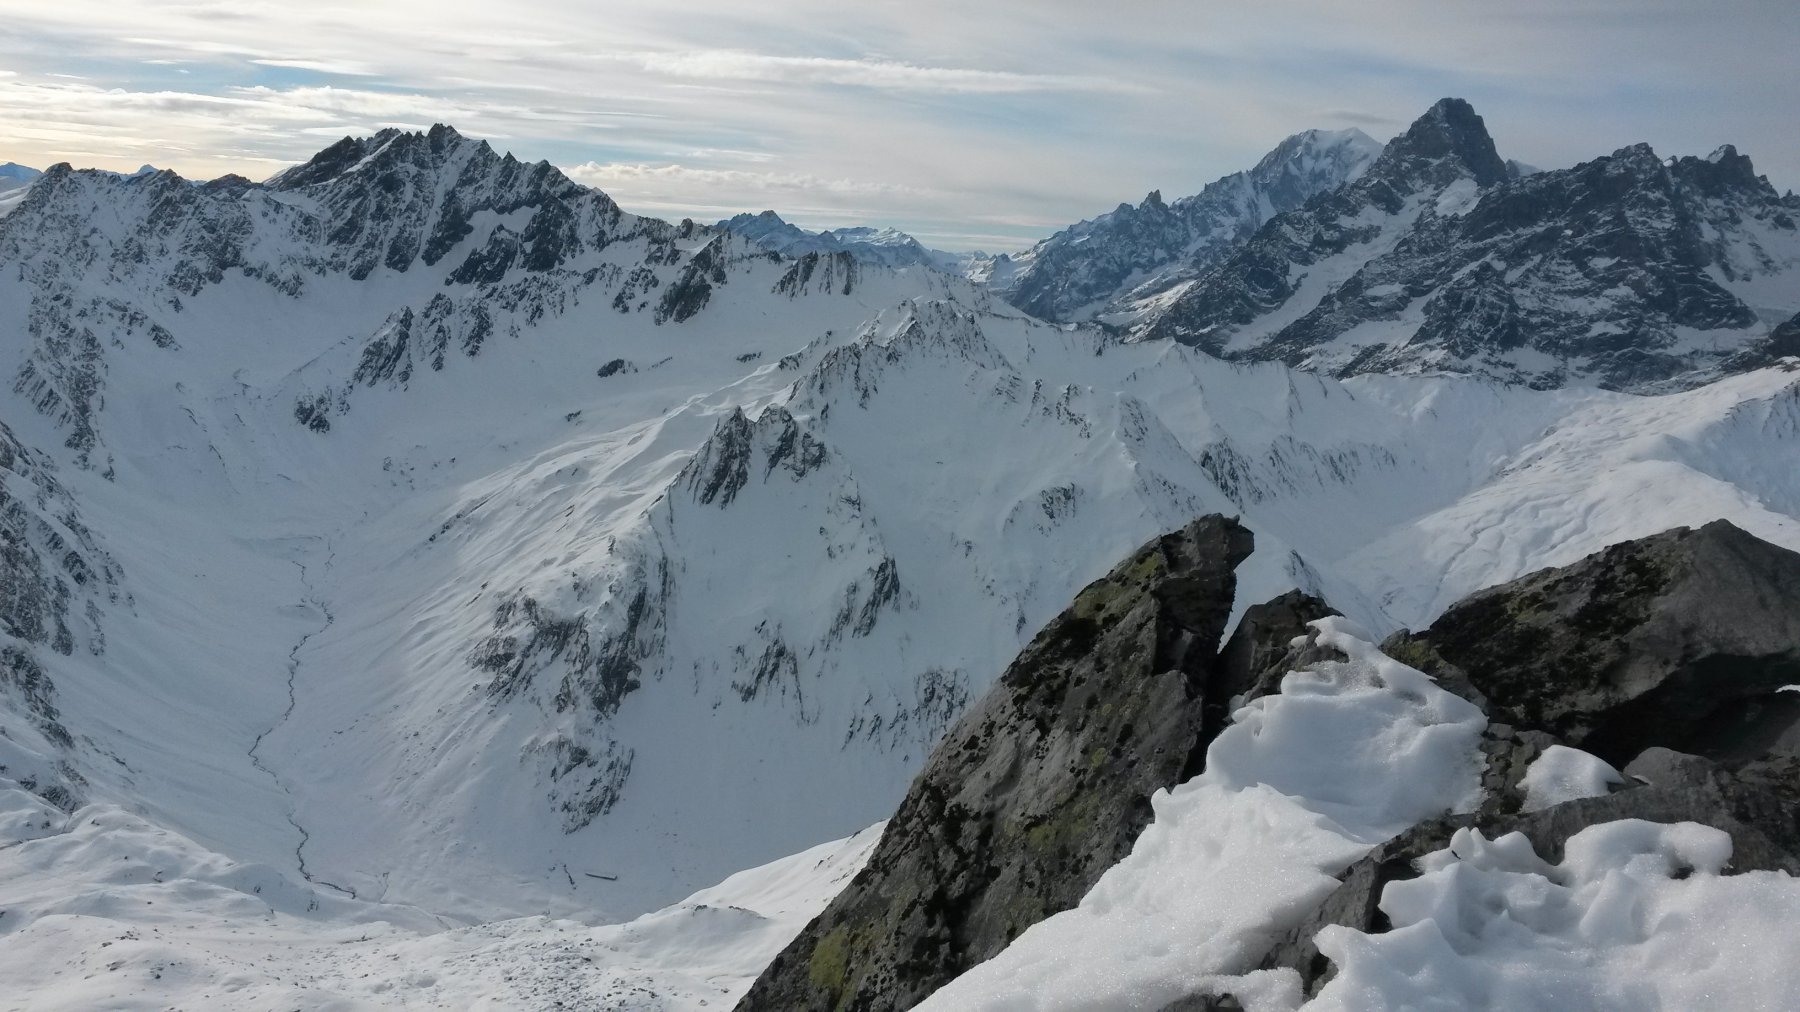 Dalla cima si vede l'itinerario ad anello dell'Angroniettes (val Ferret svizzera), con Monte Bianco e Grand Jorasses sullo sfondo!